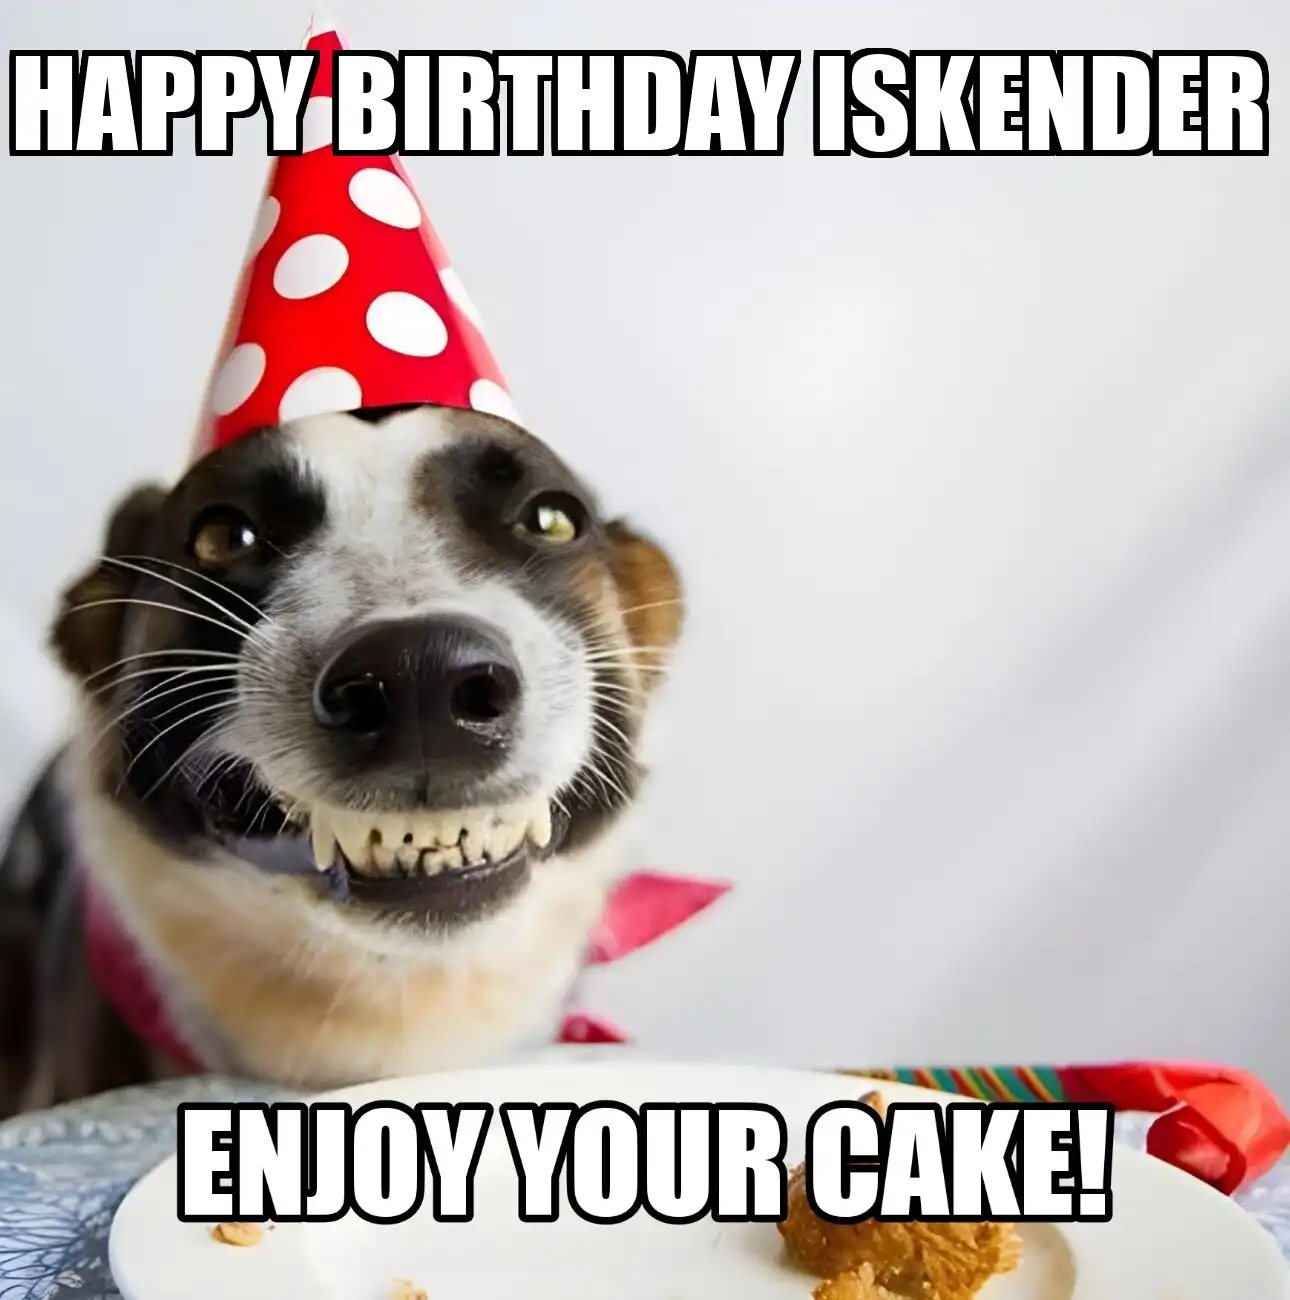 Happy Birthday Iskender Enjoy Your Cake Dog Meme